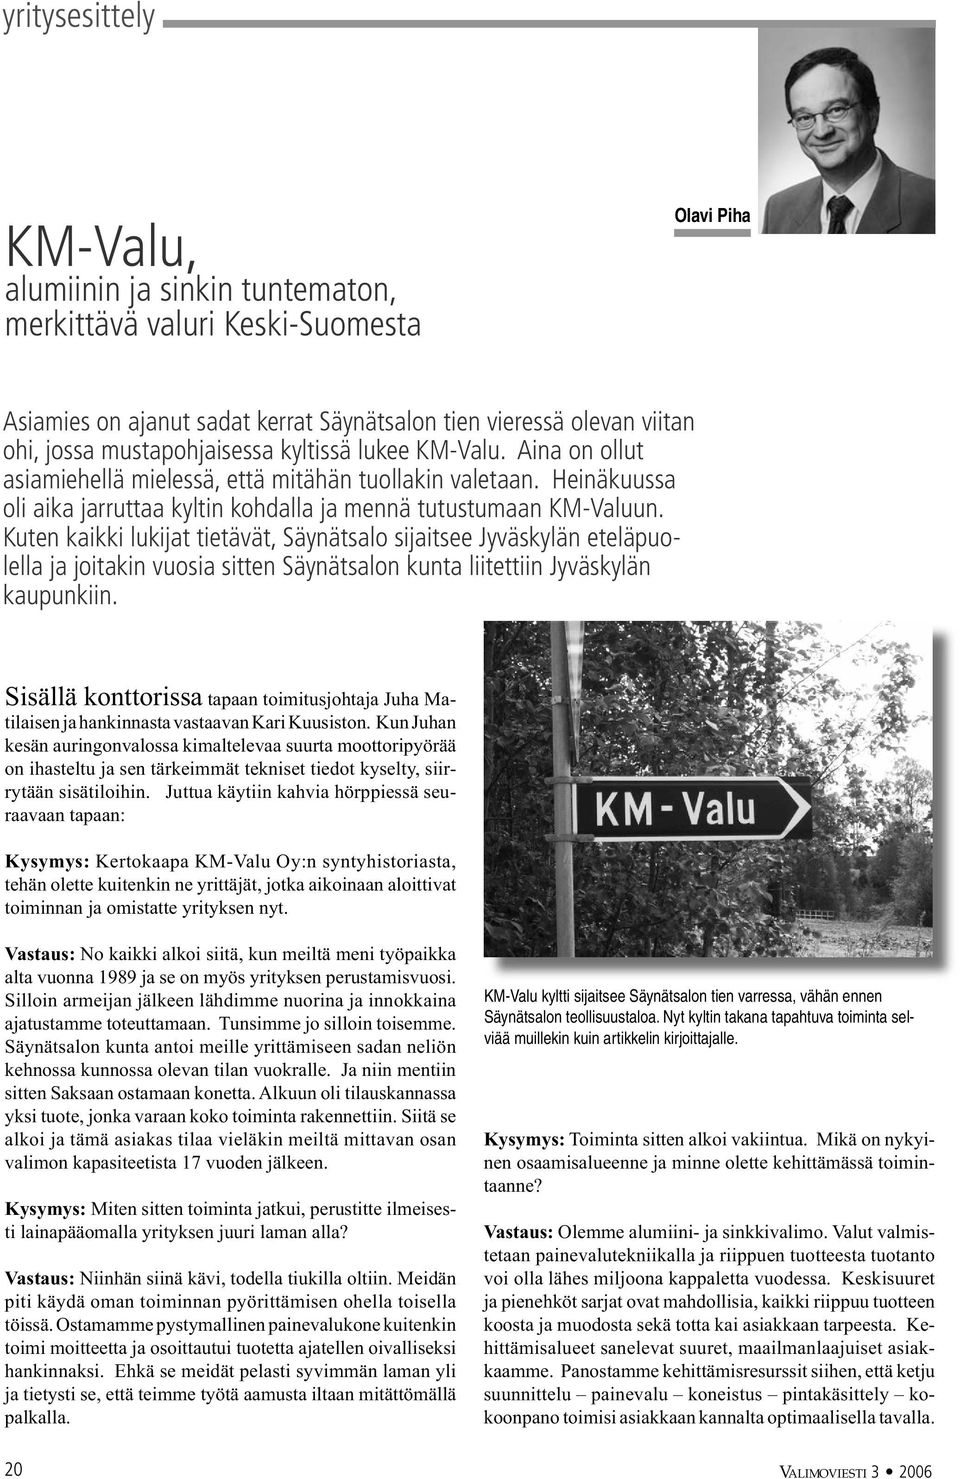 Kuten kaikki lukijat tietävät, Säynätsalo sijaitsee Jyväskylän eteläpuolella ja joitakin vuosia sitten Säynätsalon kunta liitettiin Jyväskylän kaupunkiin.